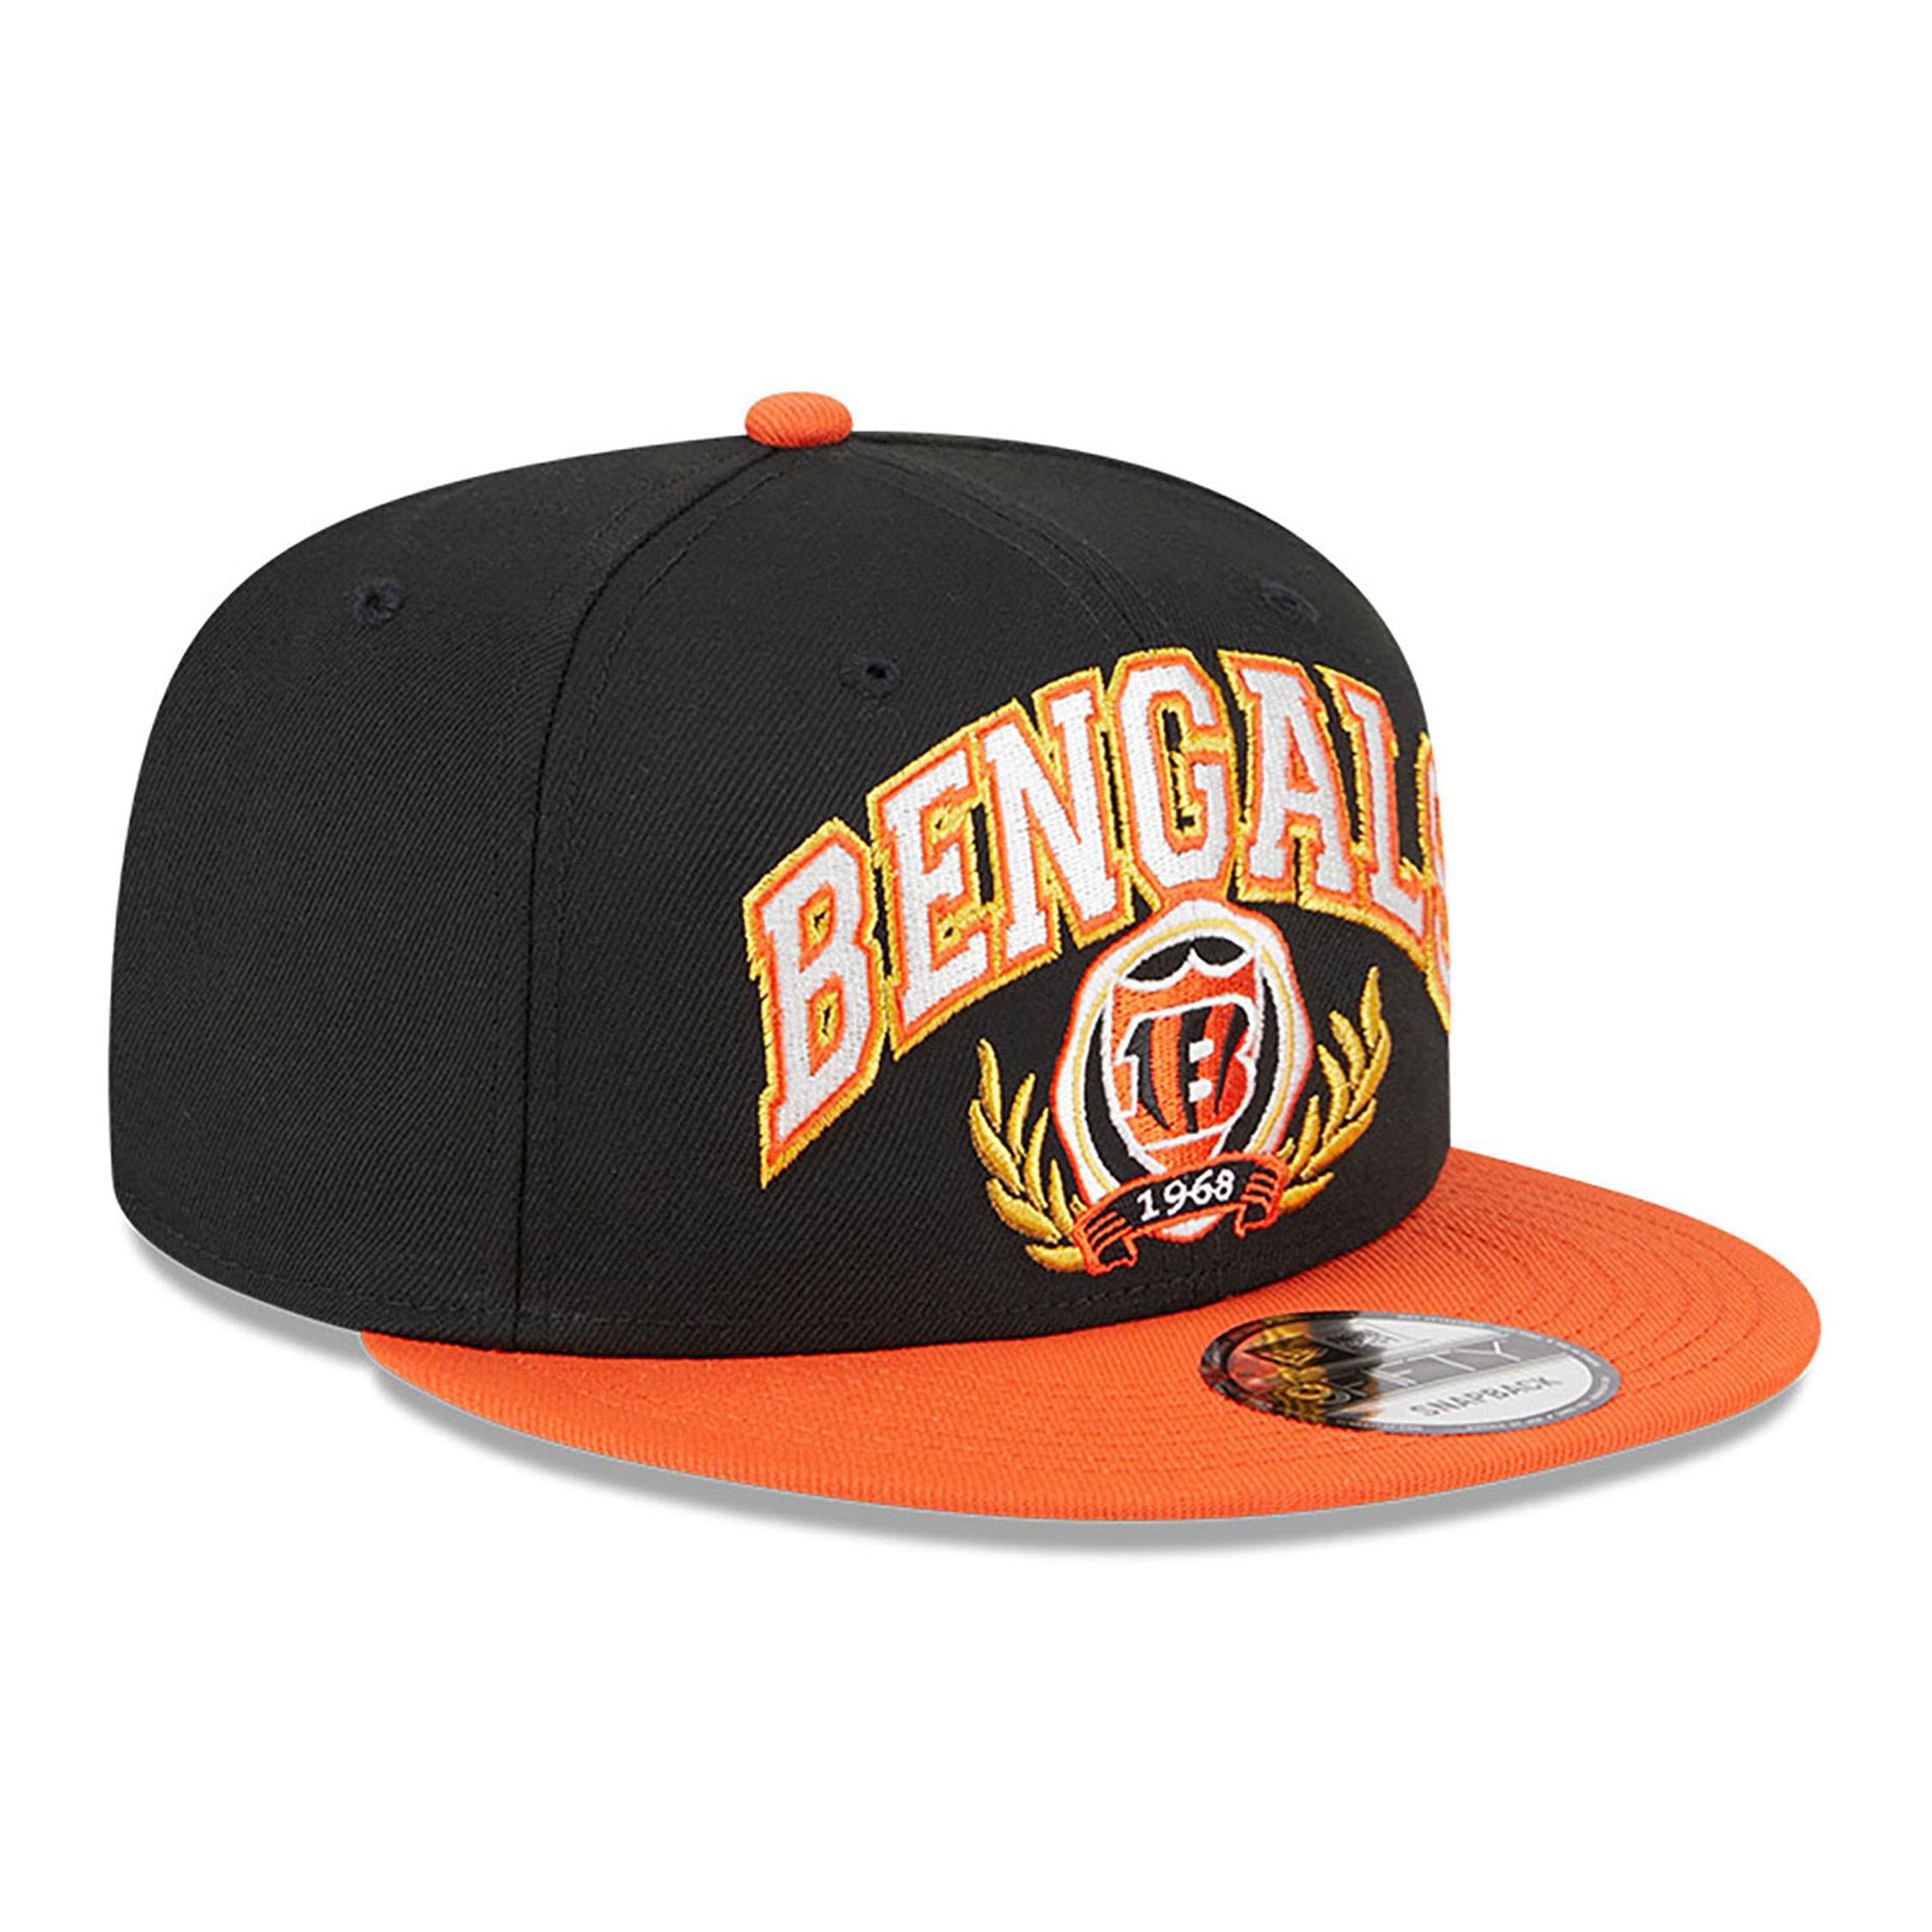 Cincinnati Bengals NFL Team Black 9FIFTY Snapback Cap